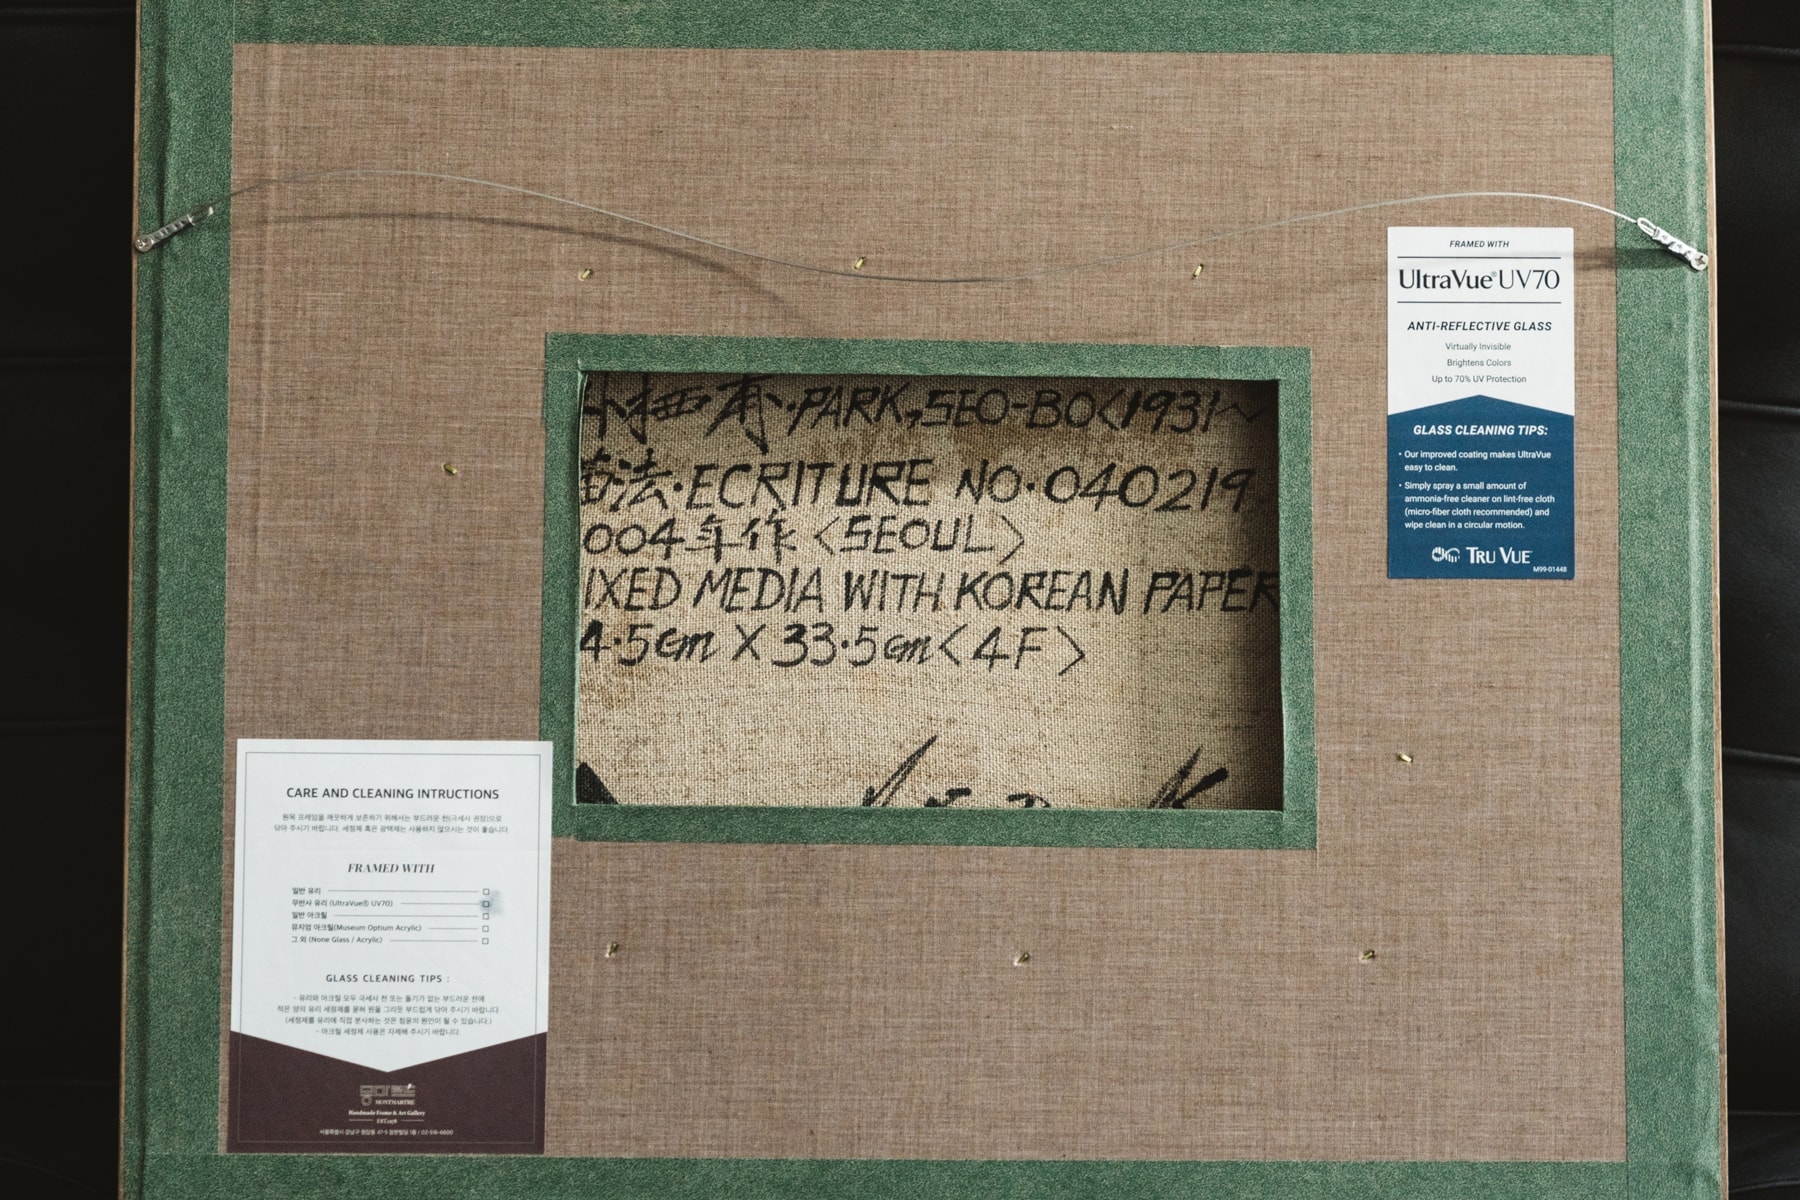 Collectors：专一收藏韩国艺术家作品的米其林推荐餐厅 OPNNG 创始人沈俊燮分享个人收藏心得